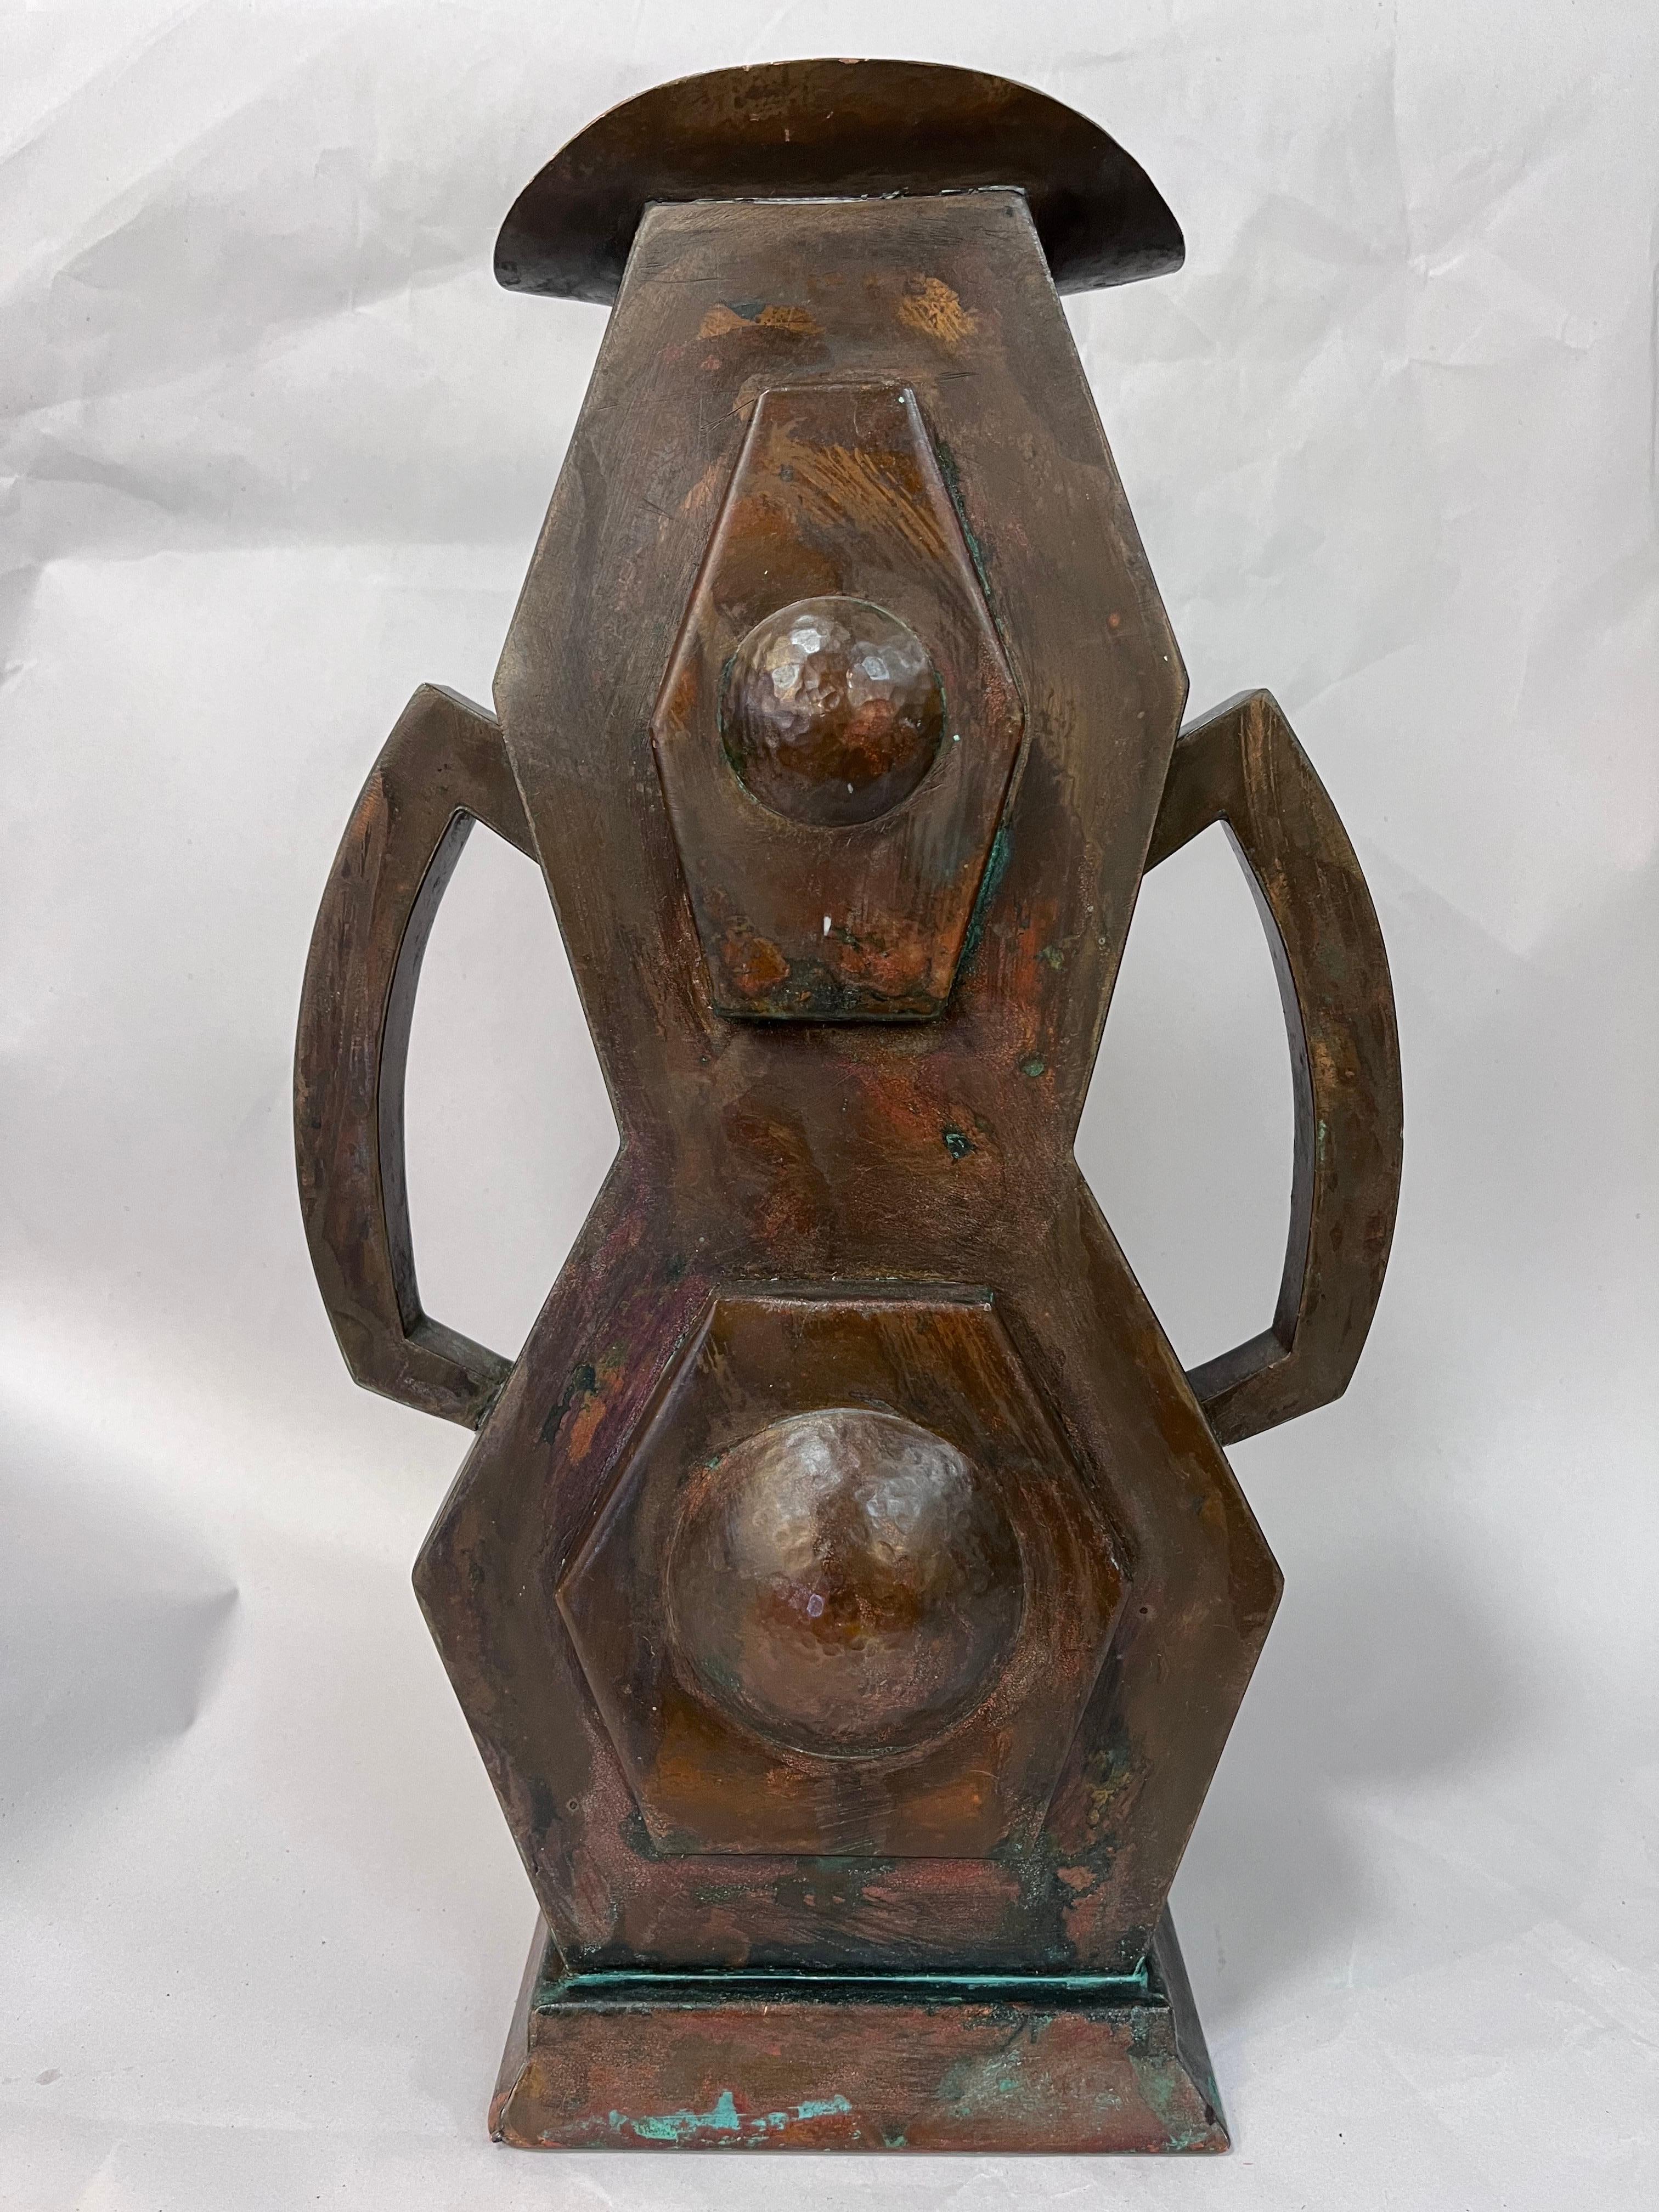 Jugendstil Arts and Crafts or Jugendstihl Style Copper Vase Hammered Surface Double Handles